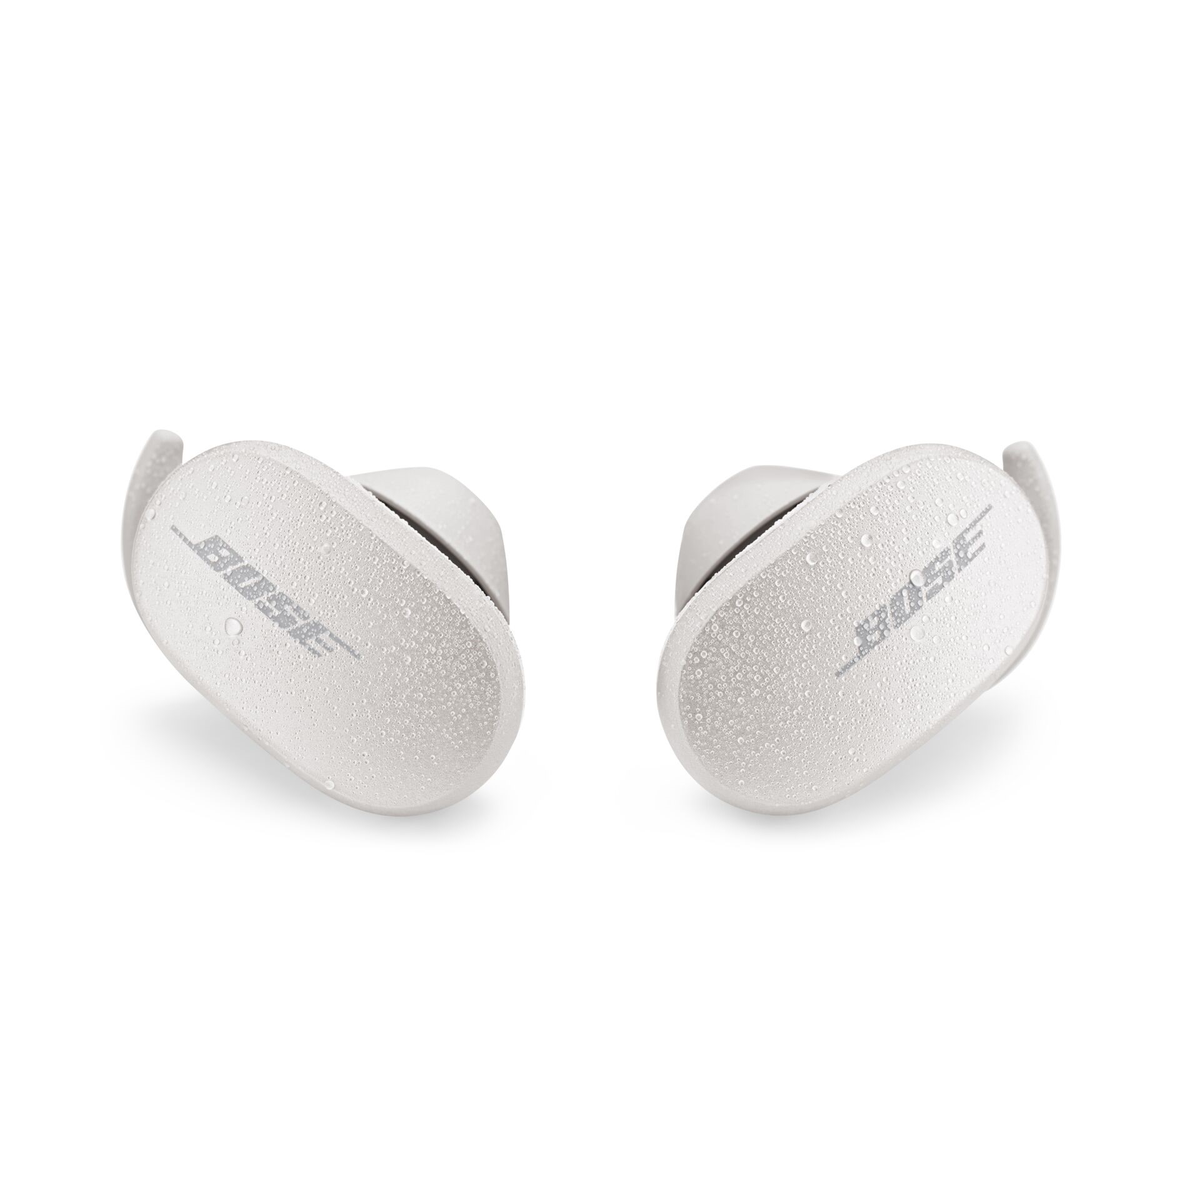 SOAPSTONE, Kopfhörer EARBUDS BOSE QUIETCOMFORT In-ear Bluetooth Soapstone